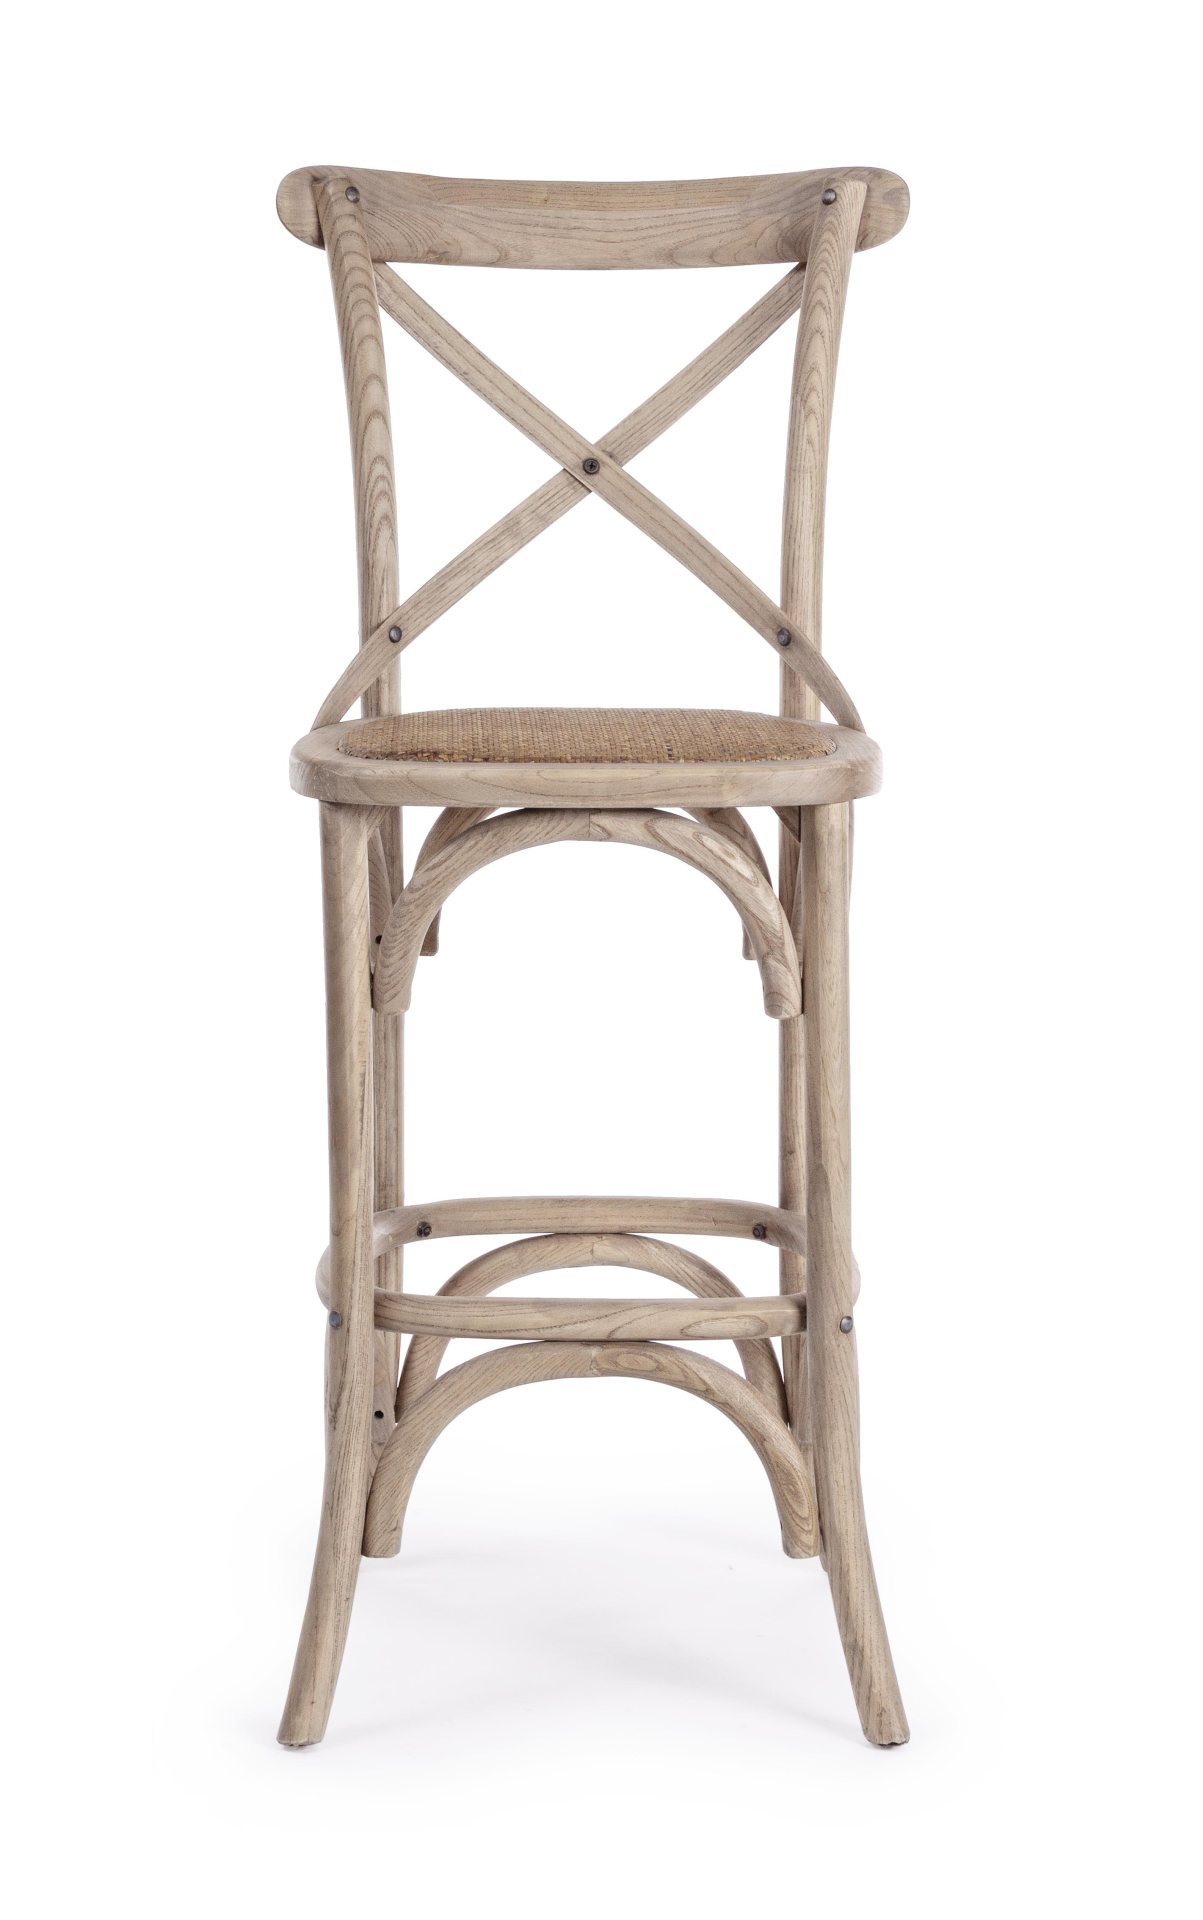 Der Barhocker Cross überzeugt mit seinem klassischen Design. Gefertigt wurde er aus Ulmenholz, welches einen natürlichen Farbton besitzt. Die Sitzfläche ist aus natürlichem Ratten Geflecht. Die Sitzhöhe des Hockers beträgt 73 cm.